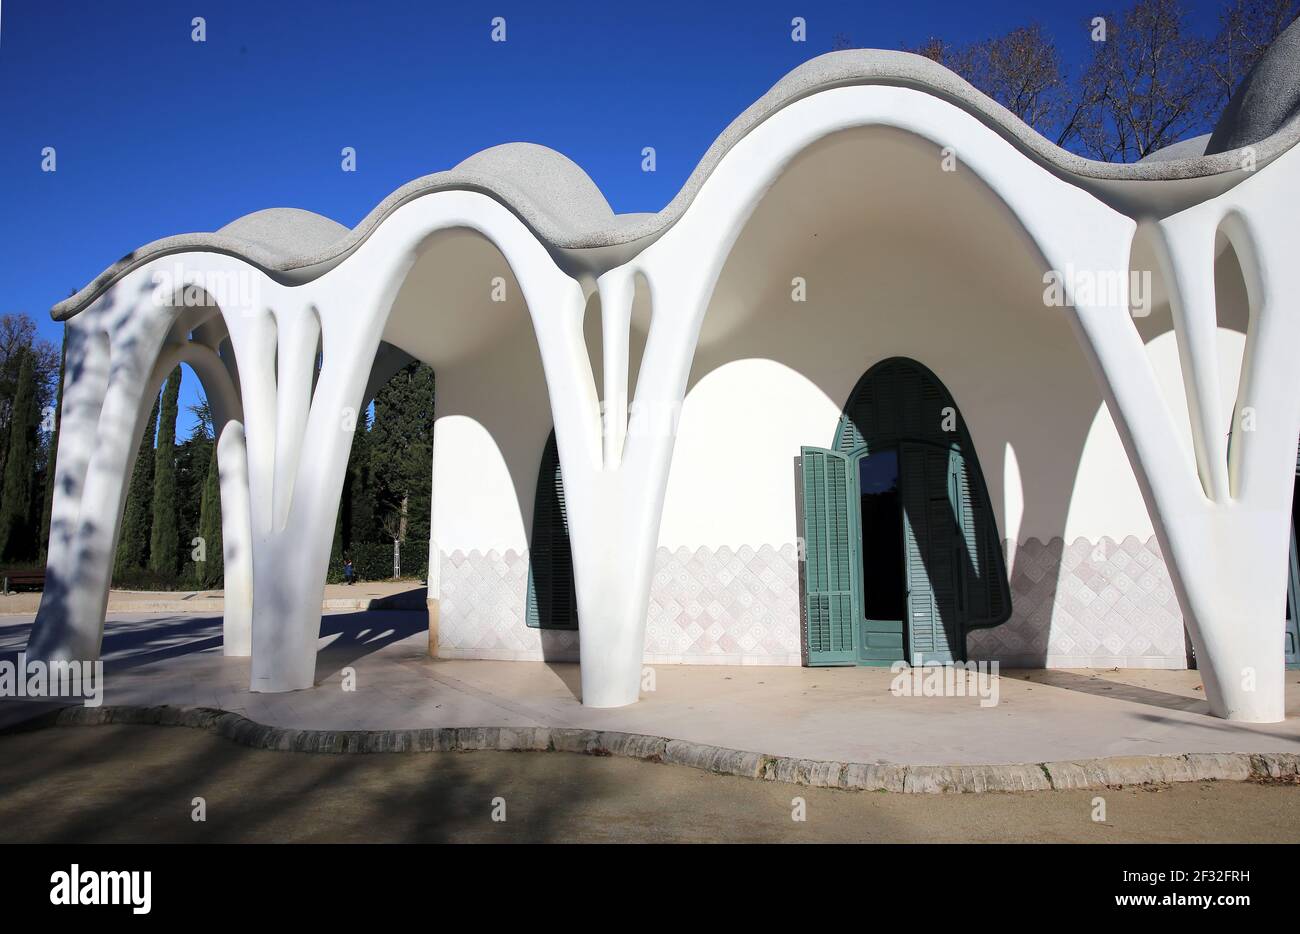 Masia Freixa ( 1907 ). Edificio modernista inspirado en Gaudí. Lluis Moncunill arquitecto. Parc de Sant Jordi, Terrassa, Cataluña. España. Foto de stock